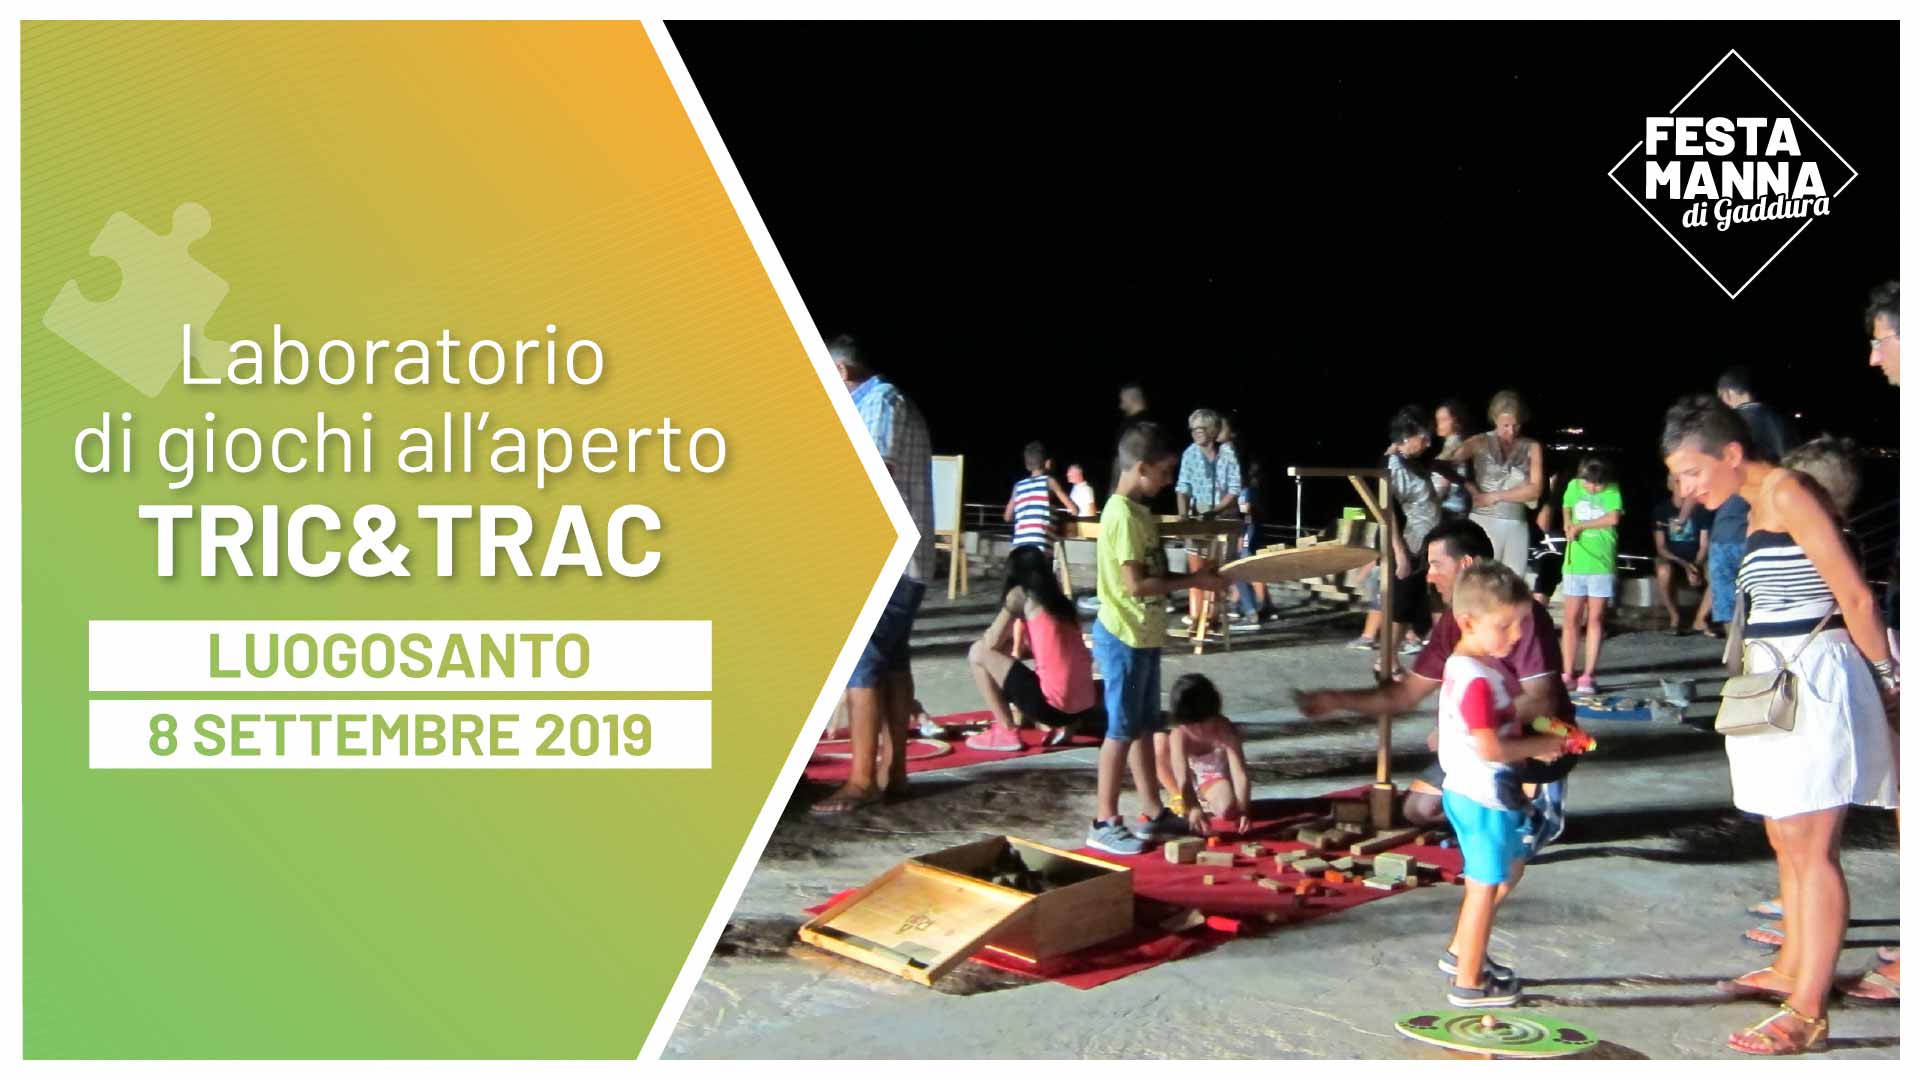 Tric & Trac, Bauwerkstatt für Holzspiele | Festa Manna di Gaddura 2019